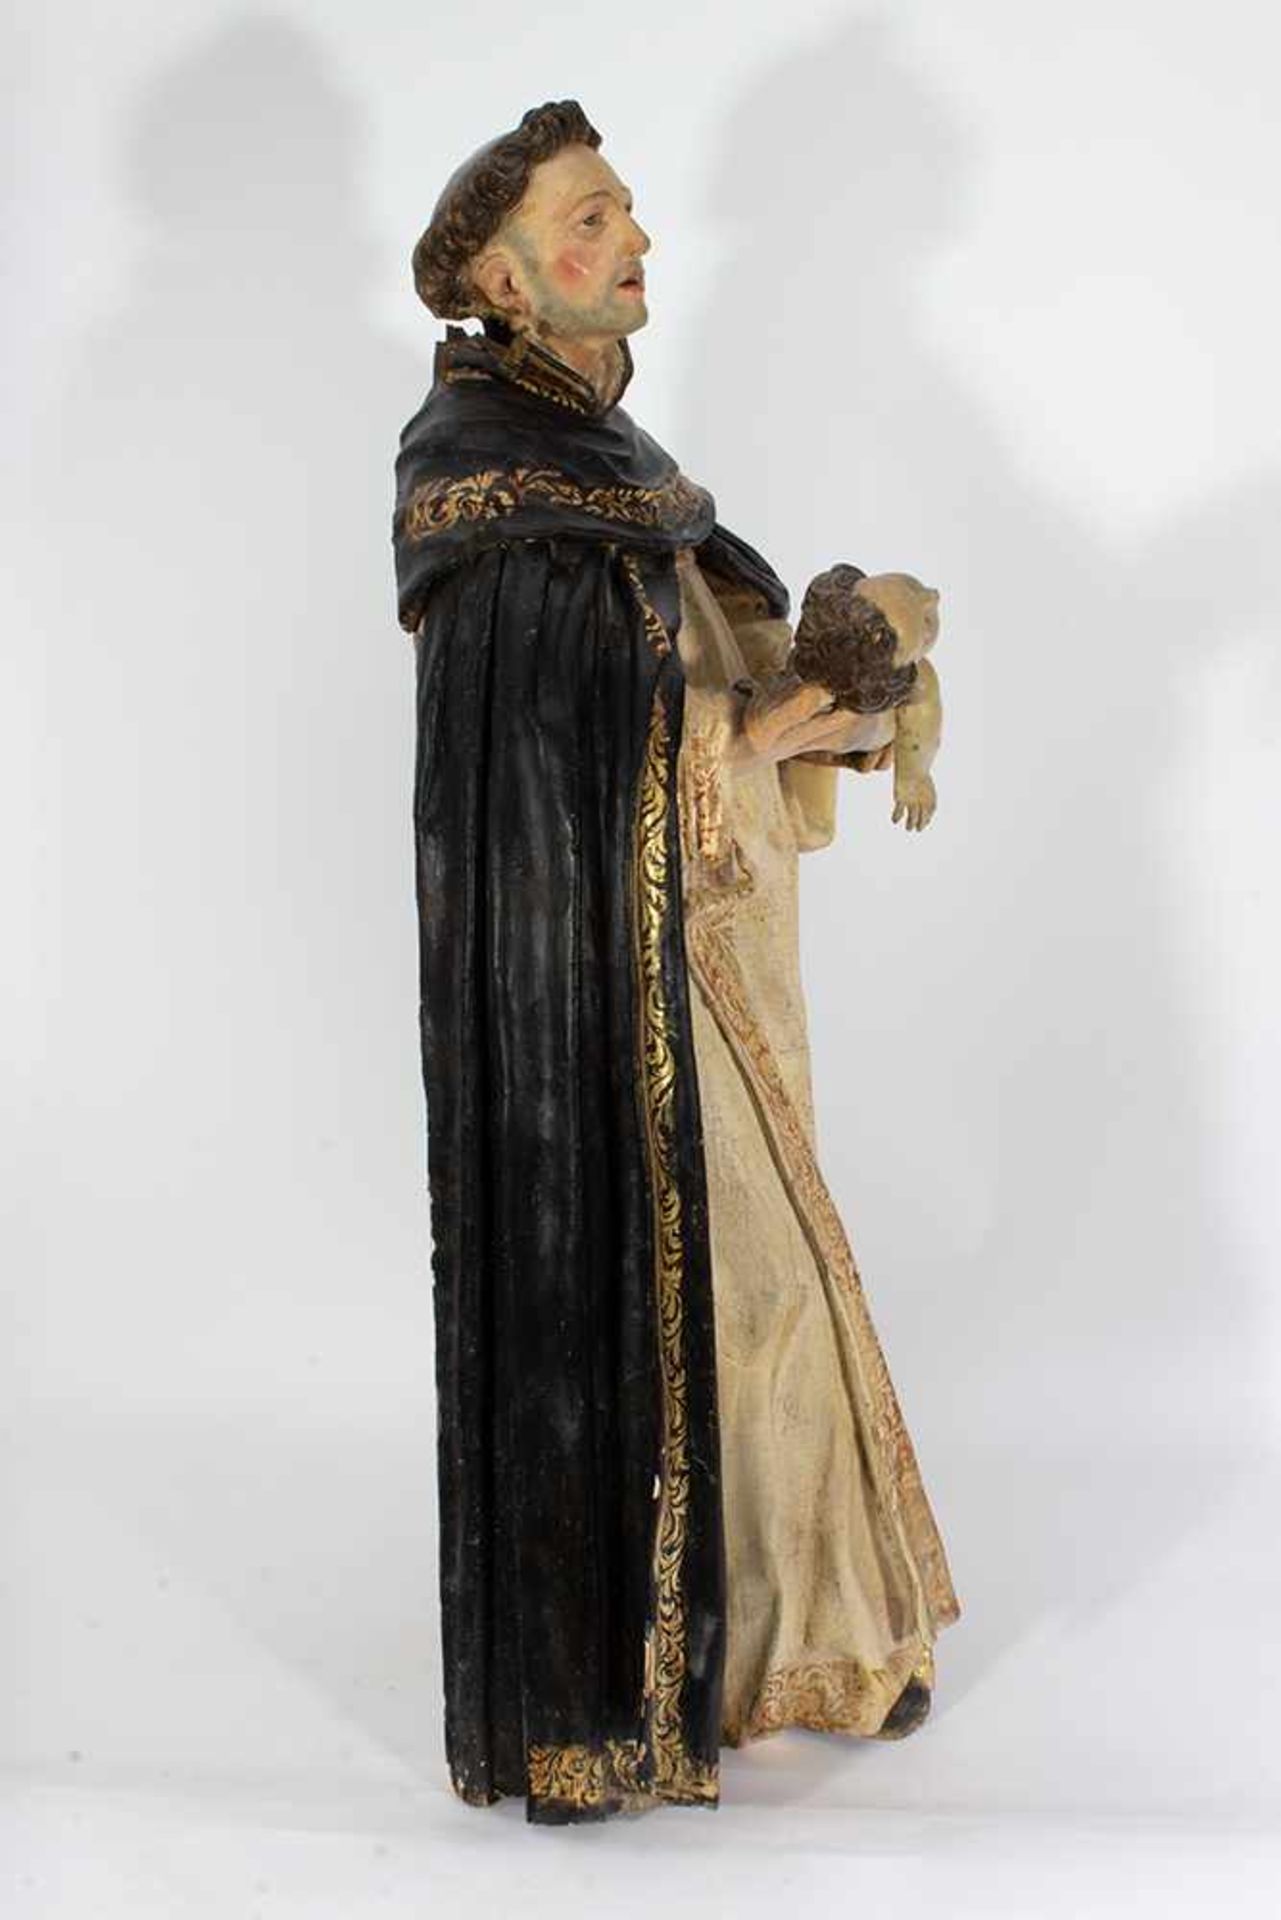 Escuela española del siglo XVII. "San Antonio". Escultura en madera tallada y policromada. Magníf - Image 3 of 5